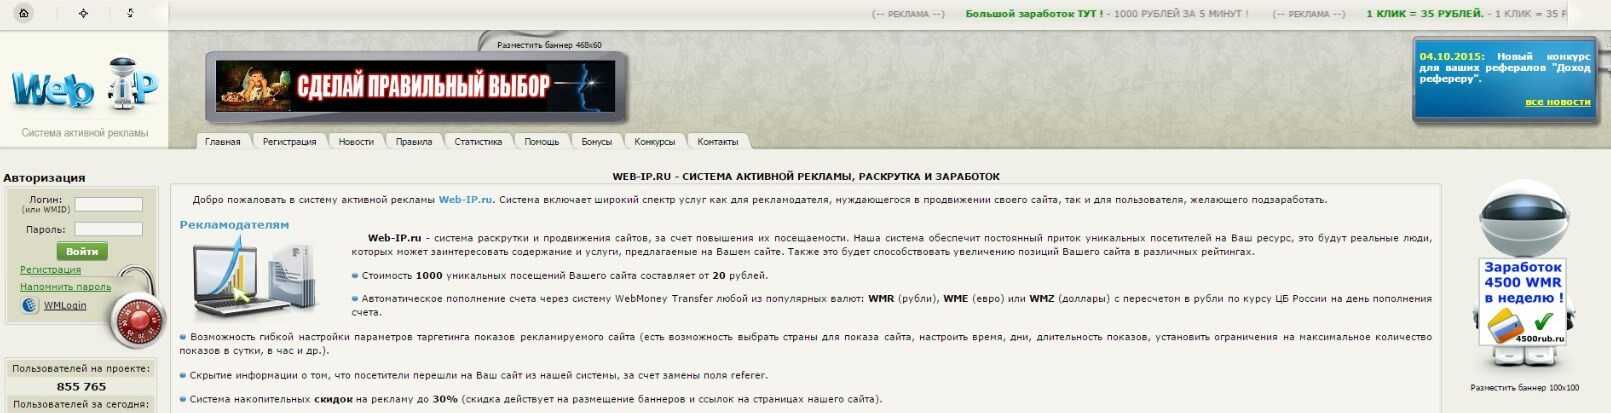 Заработок в интернете от 200 до 500 рублей в день - 21 способ